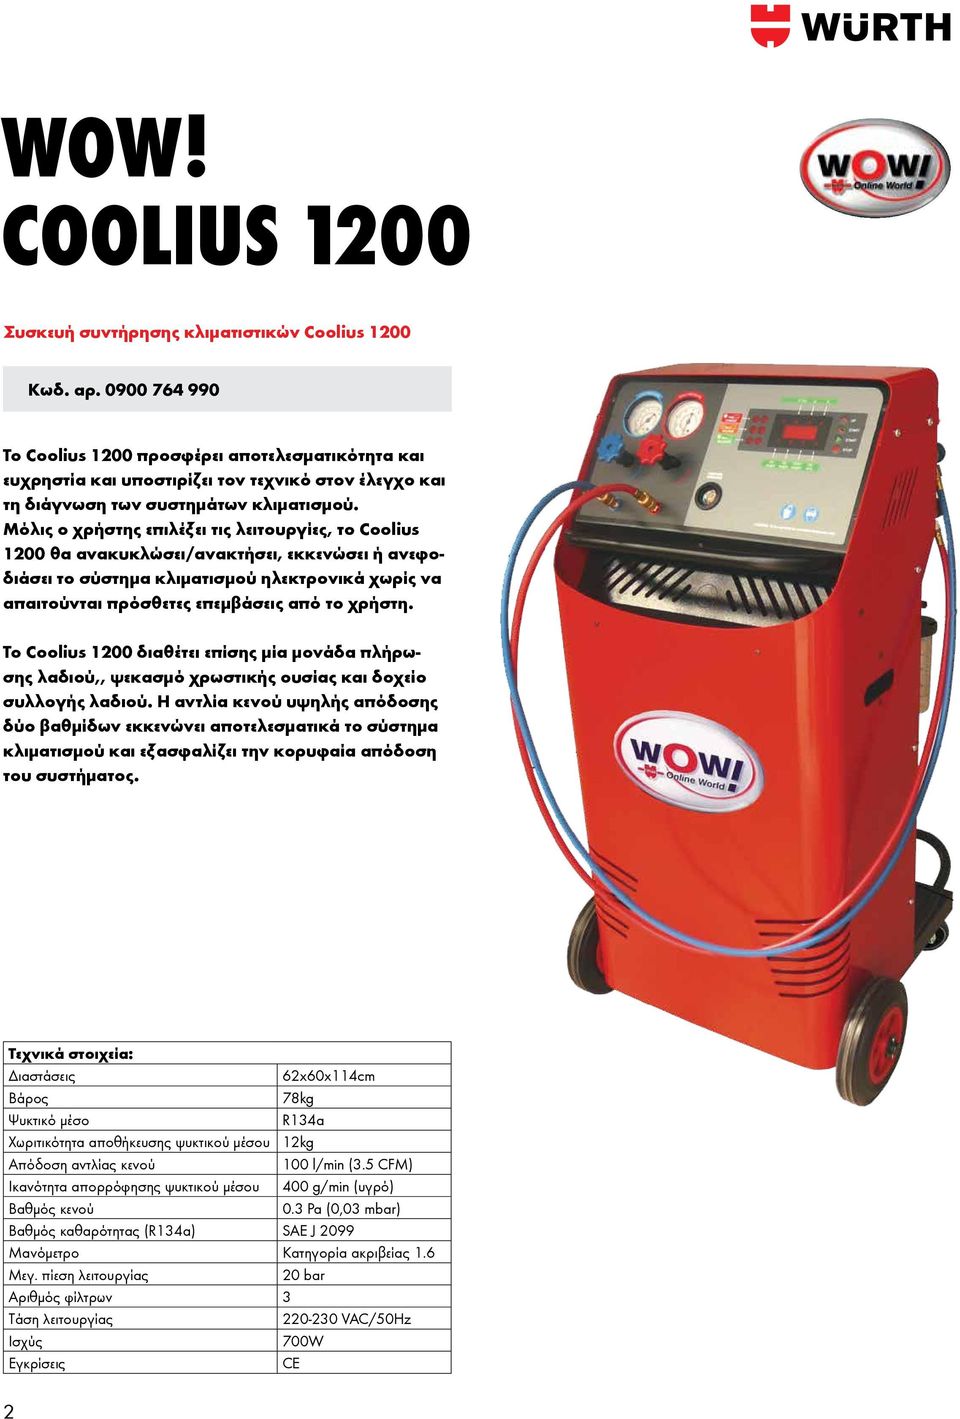 Μόλις ο χρήστης επιλέξει τις λειτουργίες, το Coolius 1200 θα ανακυκλώσει/ανακτήσει, εκκενώσει ή ανεφοδιάσει το σύστημα κλιματισμού ηλεκτρονικά χωρίς να απαιτούνται πρόσθετες επεμβάσεις από το χρήστη.